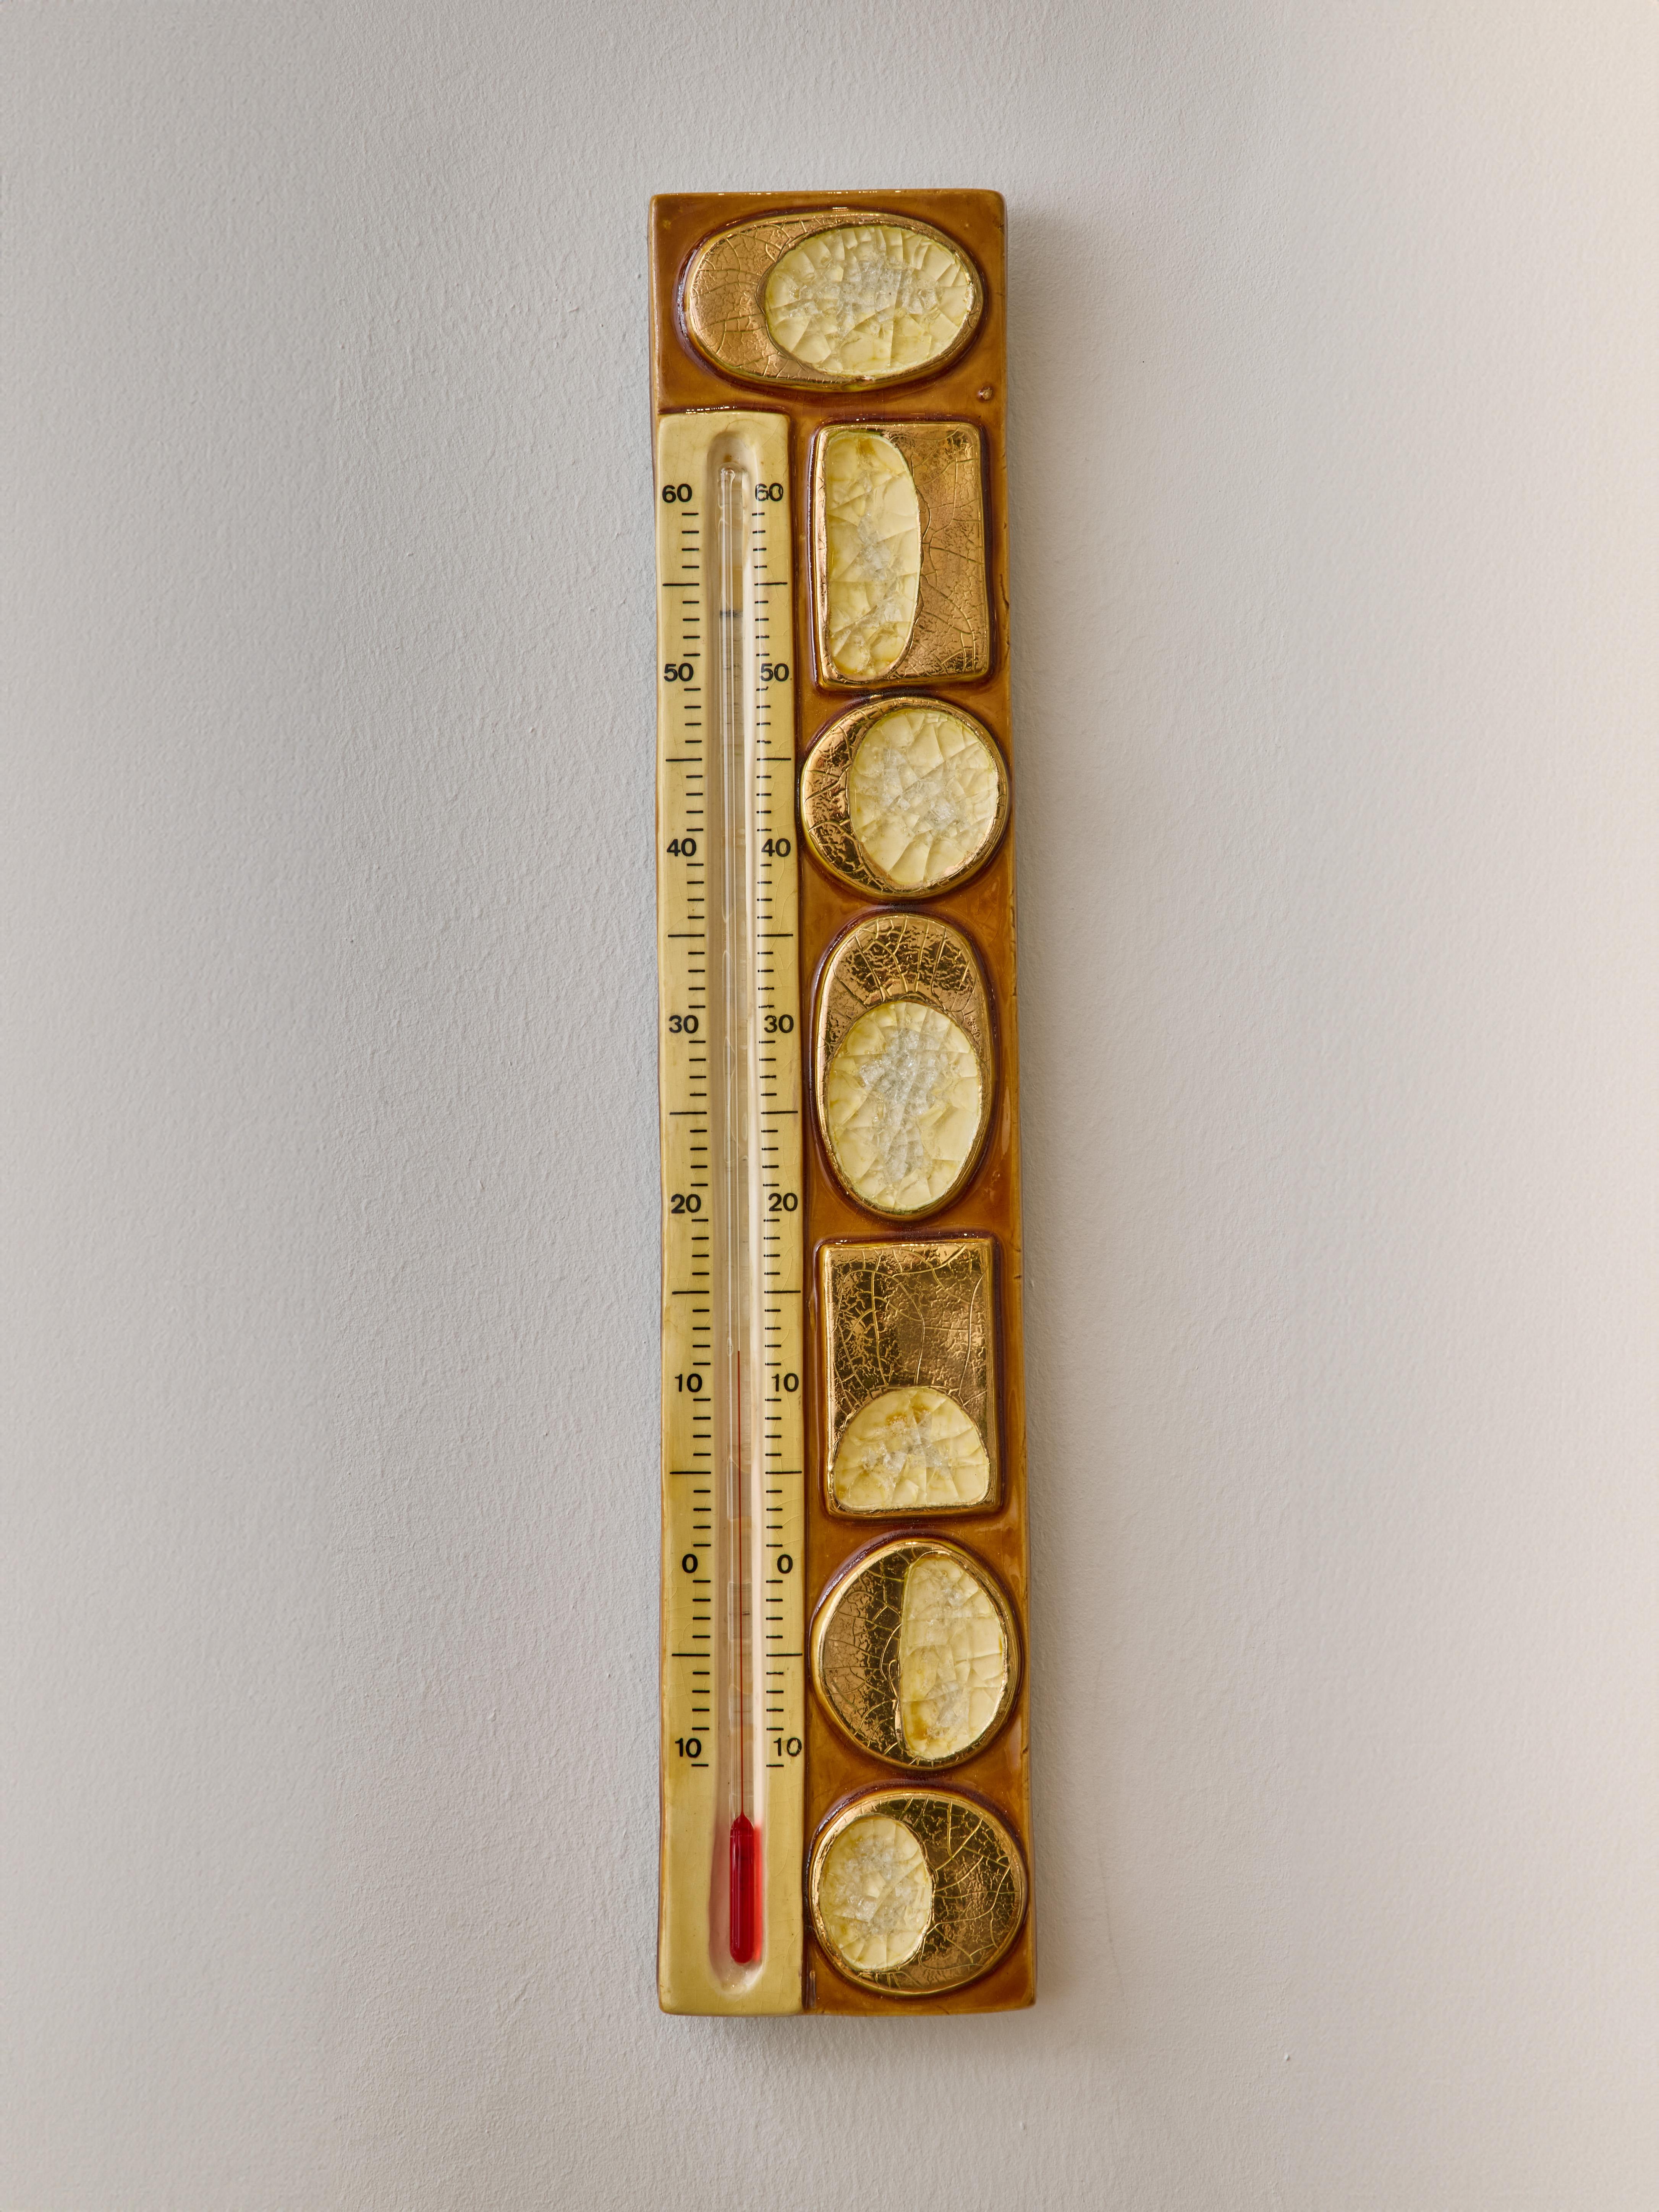 Magnifique thermomètre mural en céramique de Mithé Espelt. Décors abstraits avec glaçure dorée et poches de verre fondu

 

Marie Thérèse Espelt, alias Mithé Espelt (1923-2020)

 

Née à Townes, près de Montpellier, Mithé Espelt a commencé sa